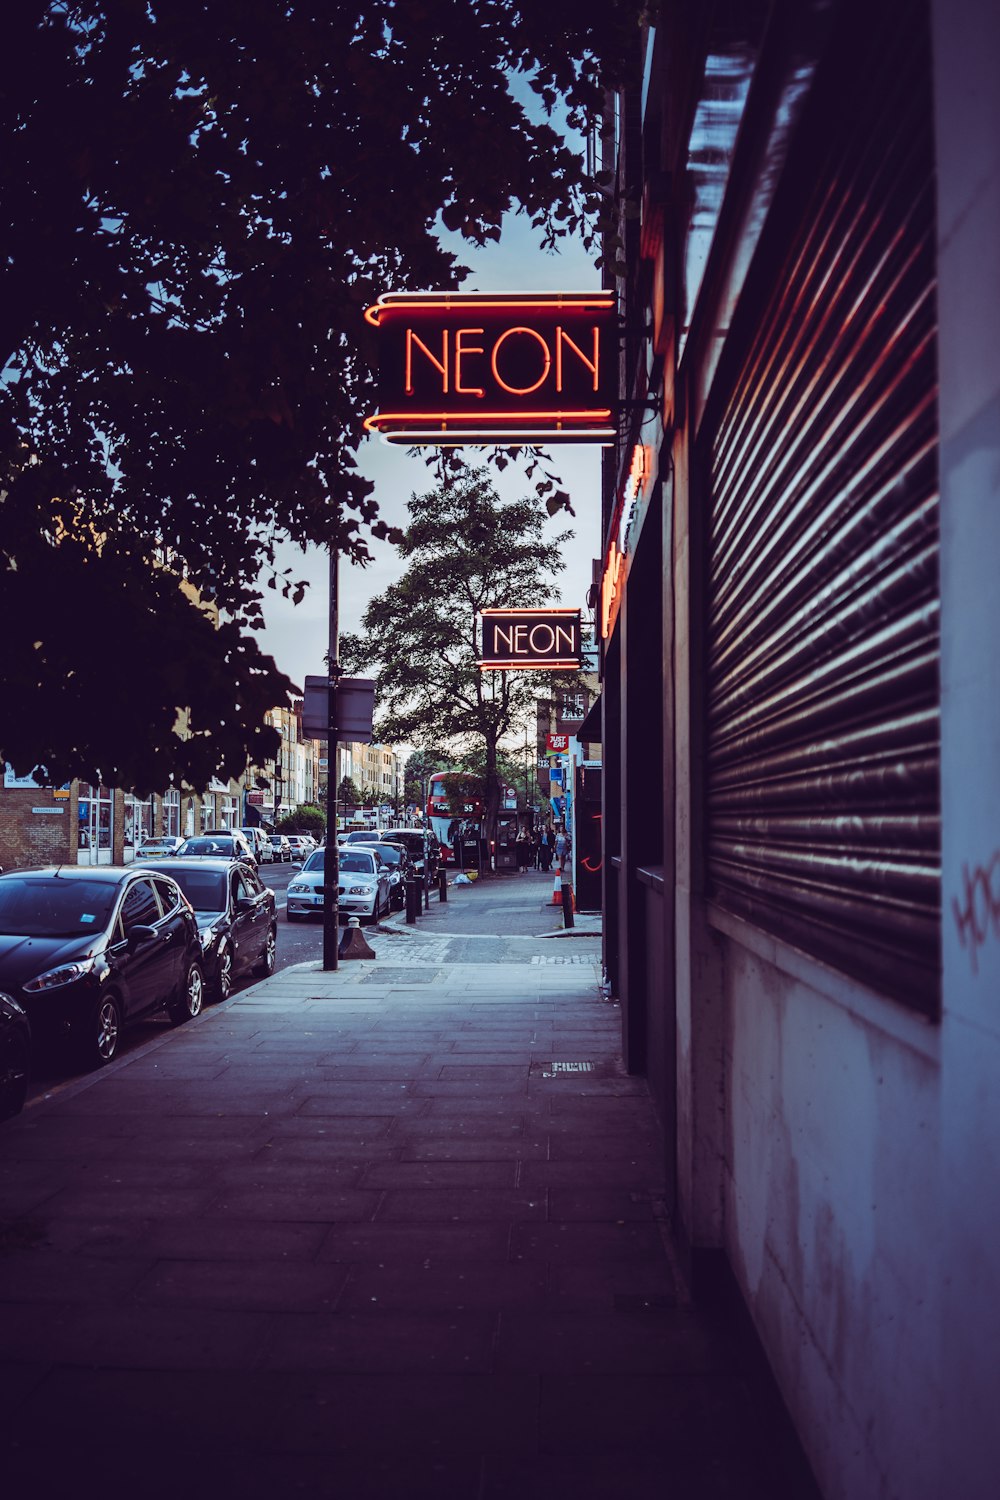 Neon light signage